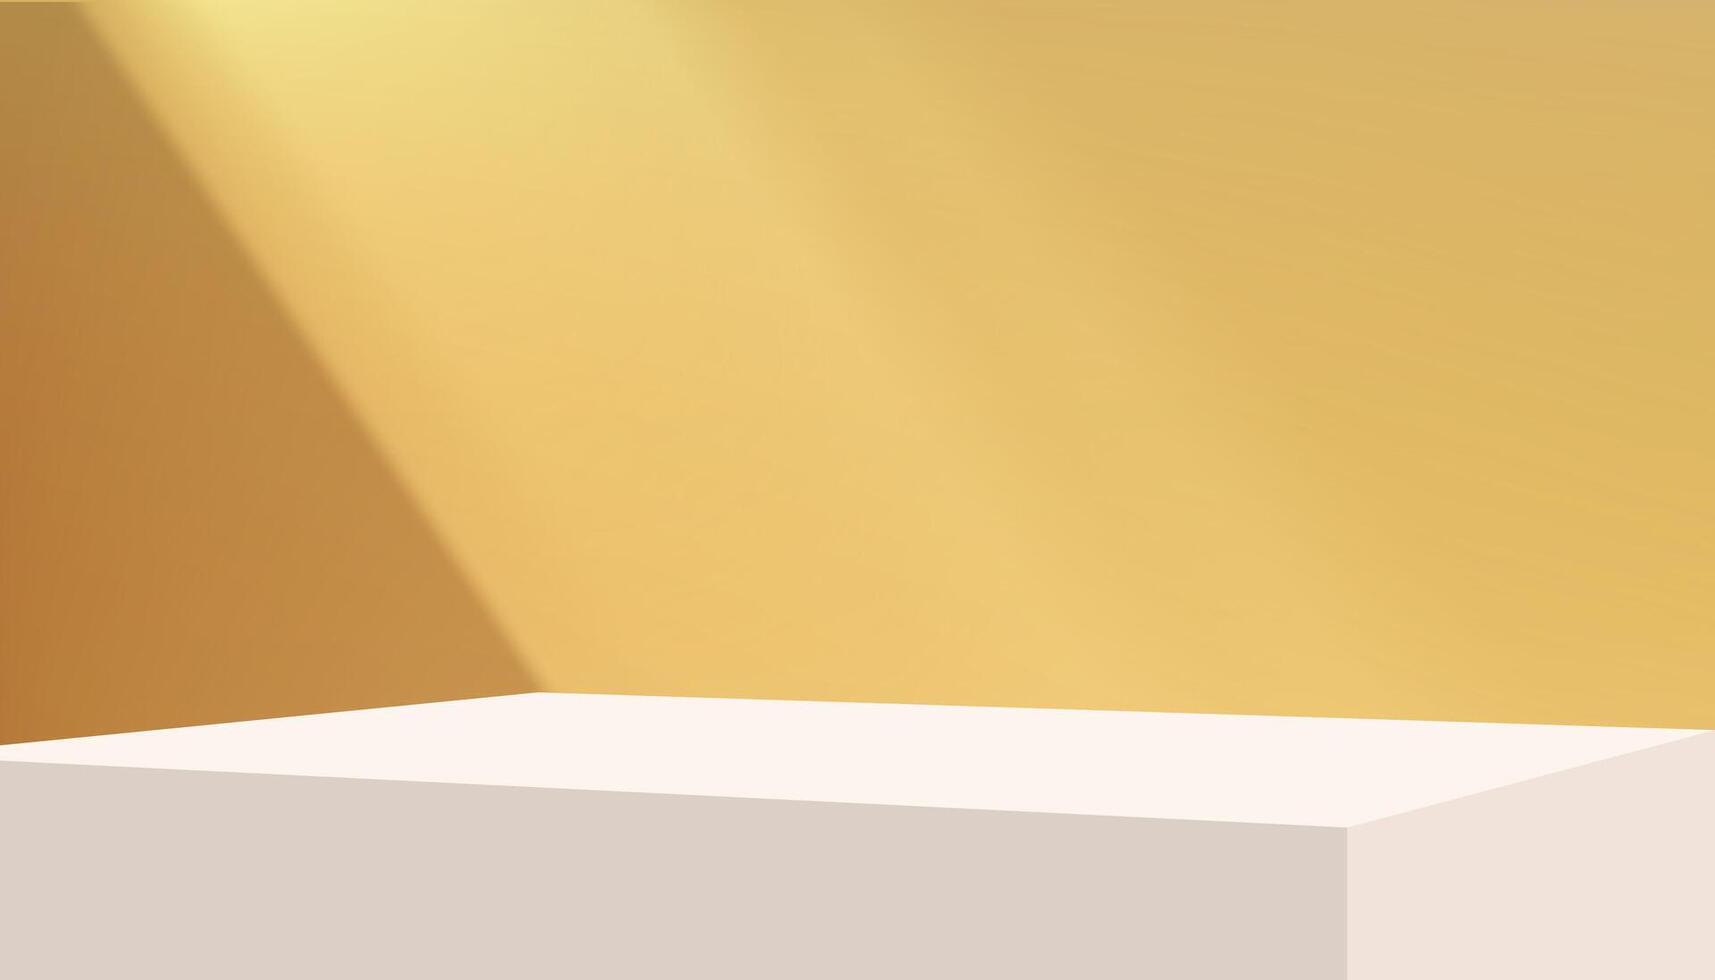 giallo studio sfondo calcestruzzo parete camera con luce, ombra su podio Schermo per Prodotto presente, sfondo cemento parete con luce solare, uso per primavera estate vendita in linea, st patrick giorno ragnatela bandiera vettore